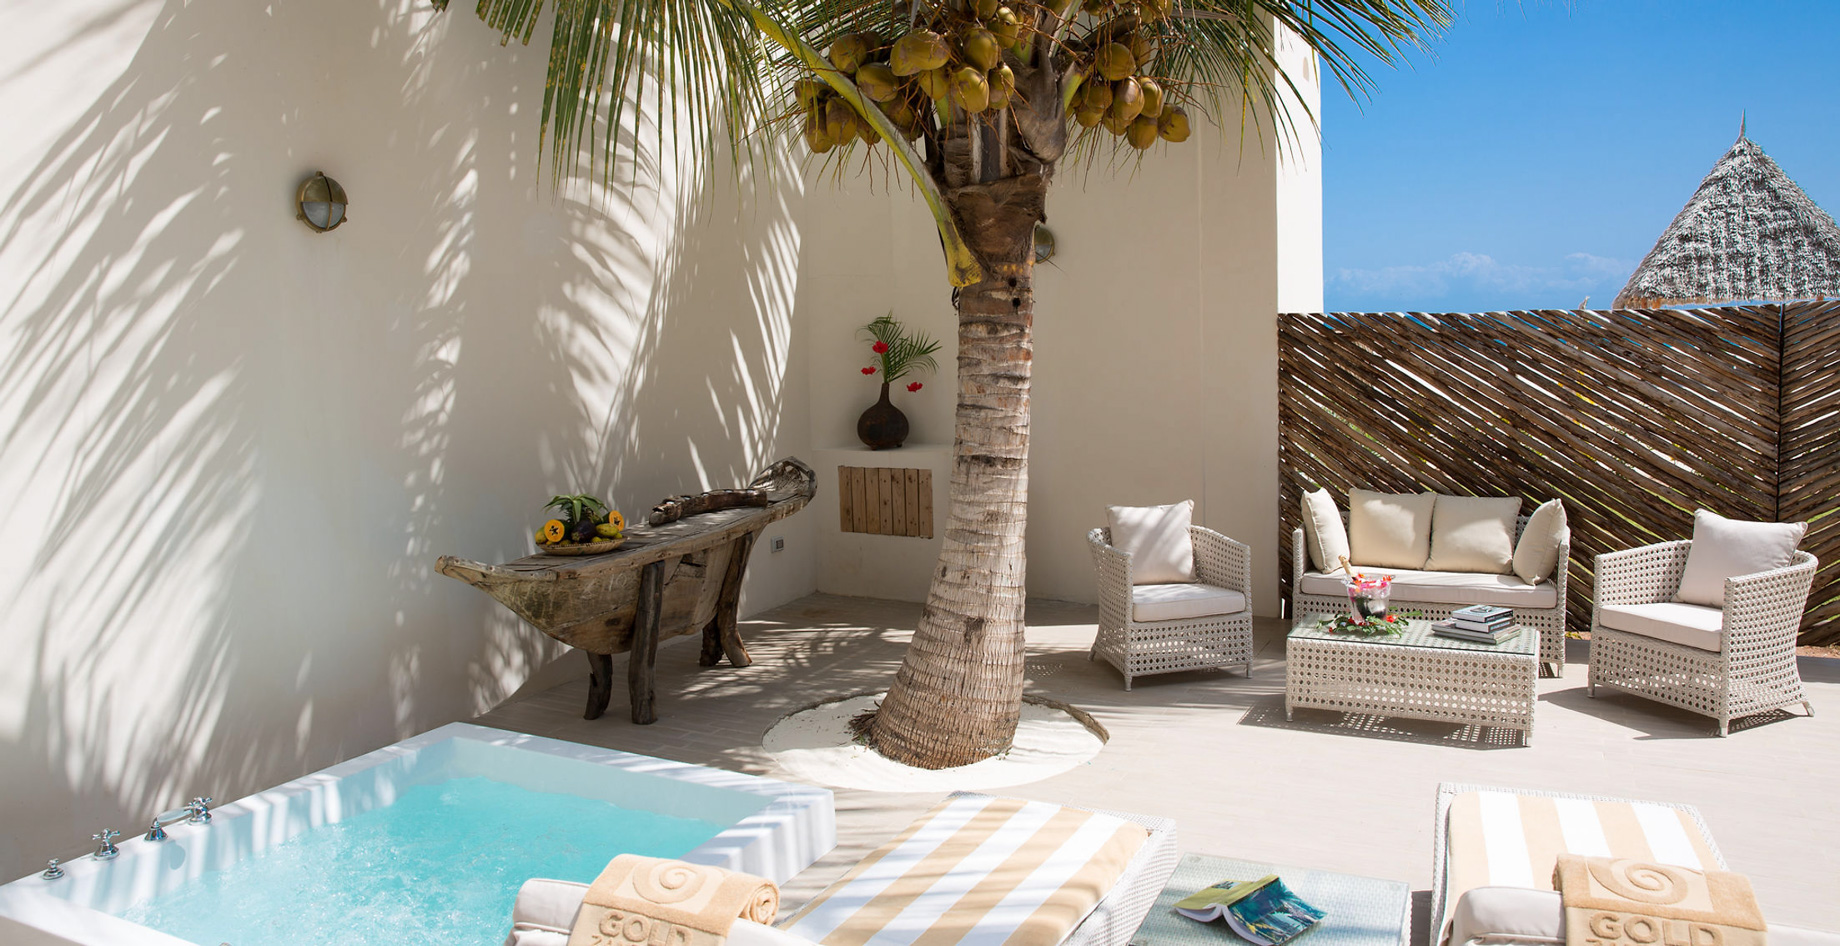 Gold Zanzibar Beach House & Spa Resort – Nungwi, Zanzibar, Tanzania – Beach Villa Deck